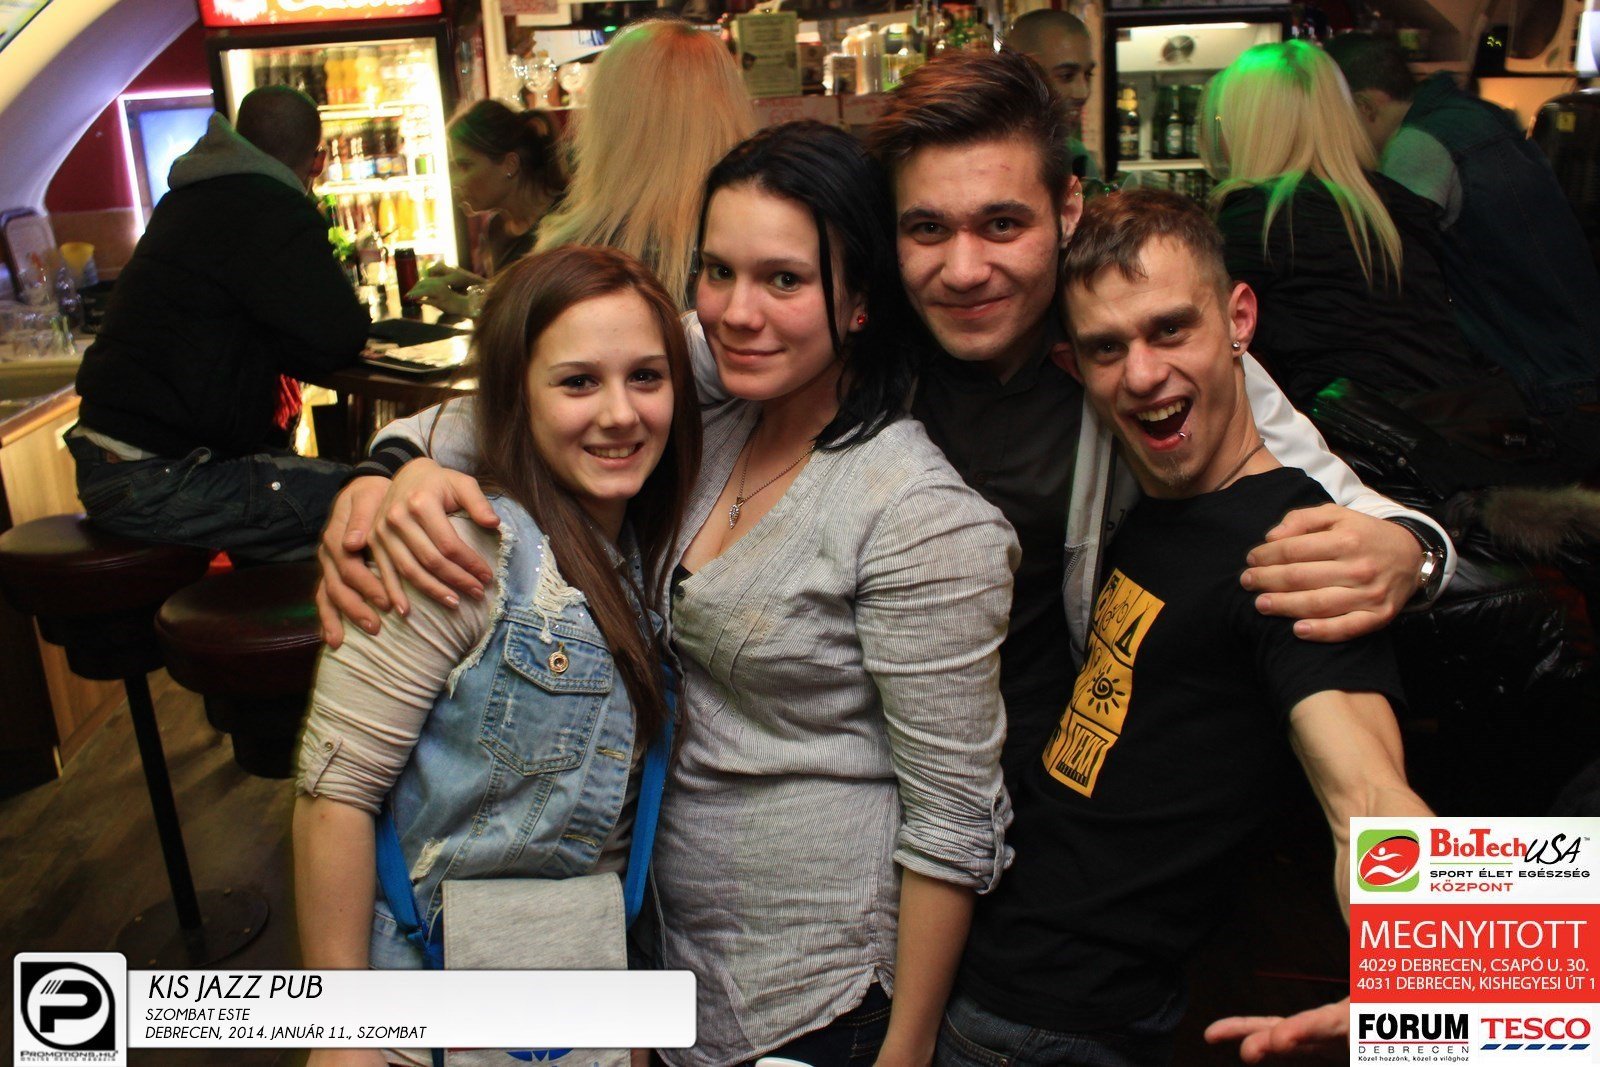 Debrecen, Kis Jazz Pub- 2014. Január 11., szombat este